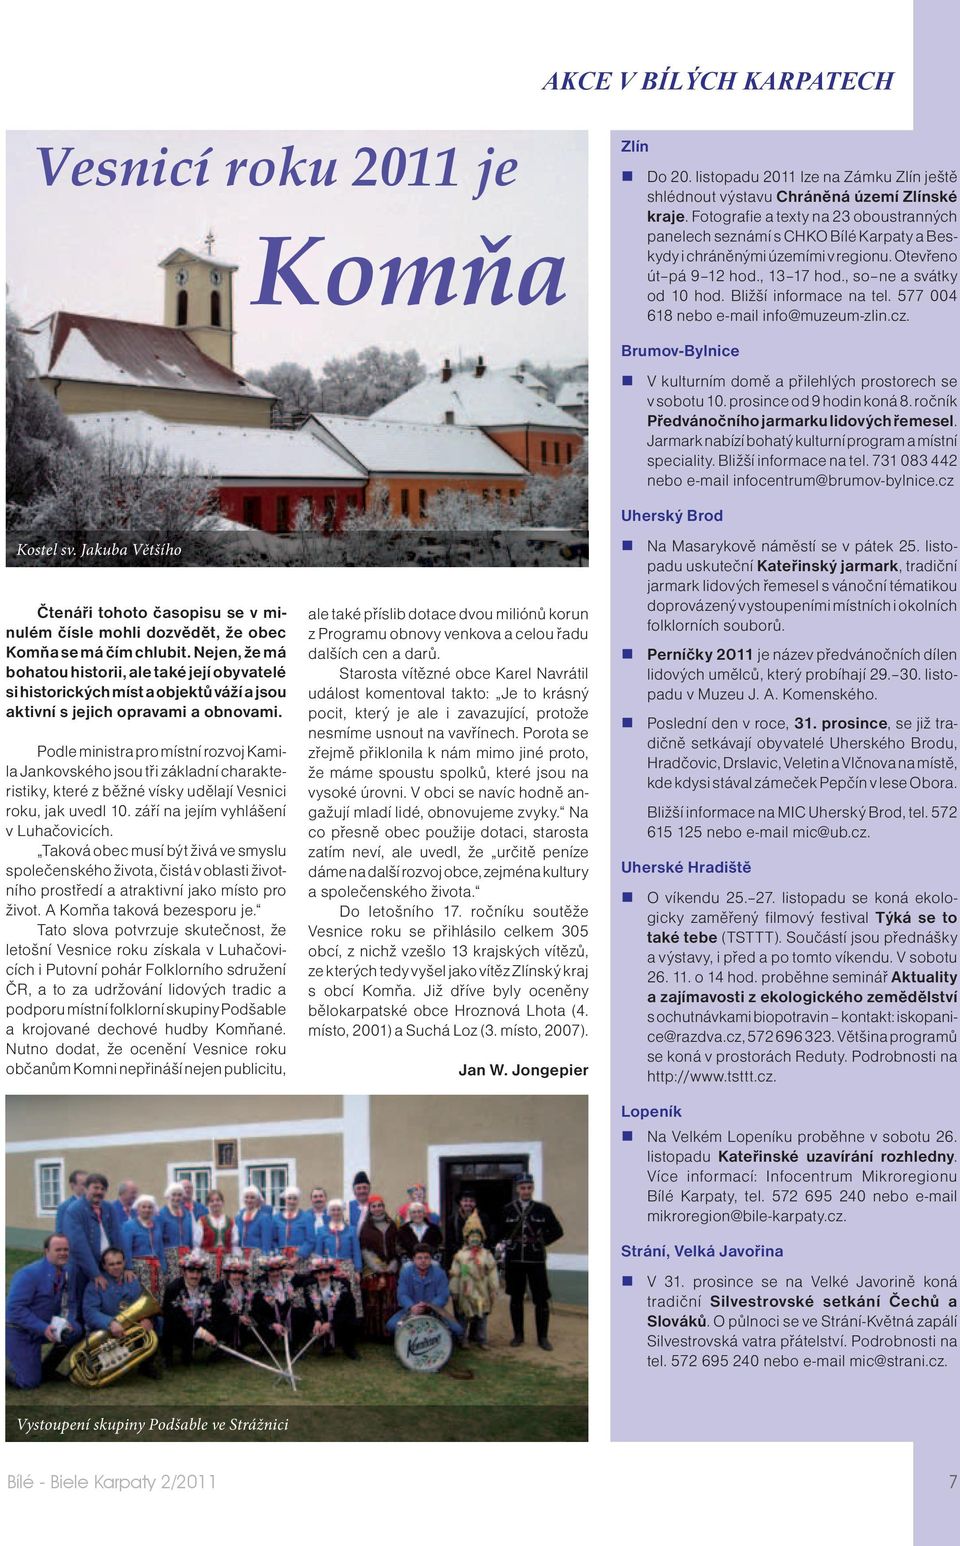 Bližší informace na tel. 577 004 618 nebo e-mail info@muzeum-zlin.cz. Kostel sv. Jakuba Většího Čtenáři tohoto časopisu se v minulém čísle mohli dozvědět, že obec Komňa se má čím chlubit.